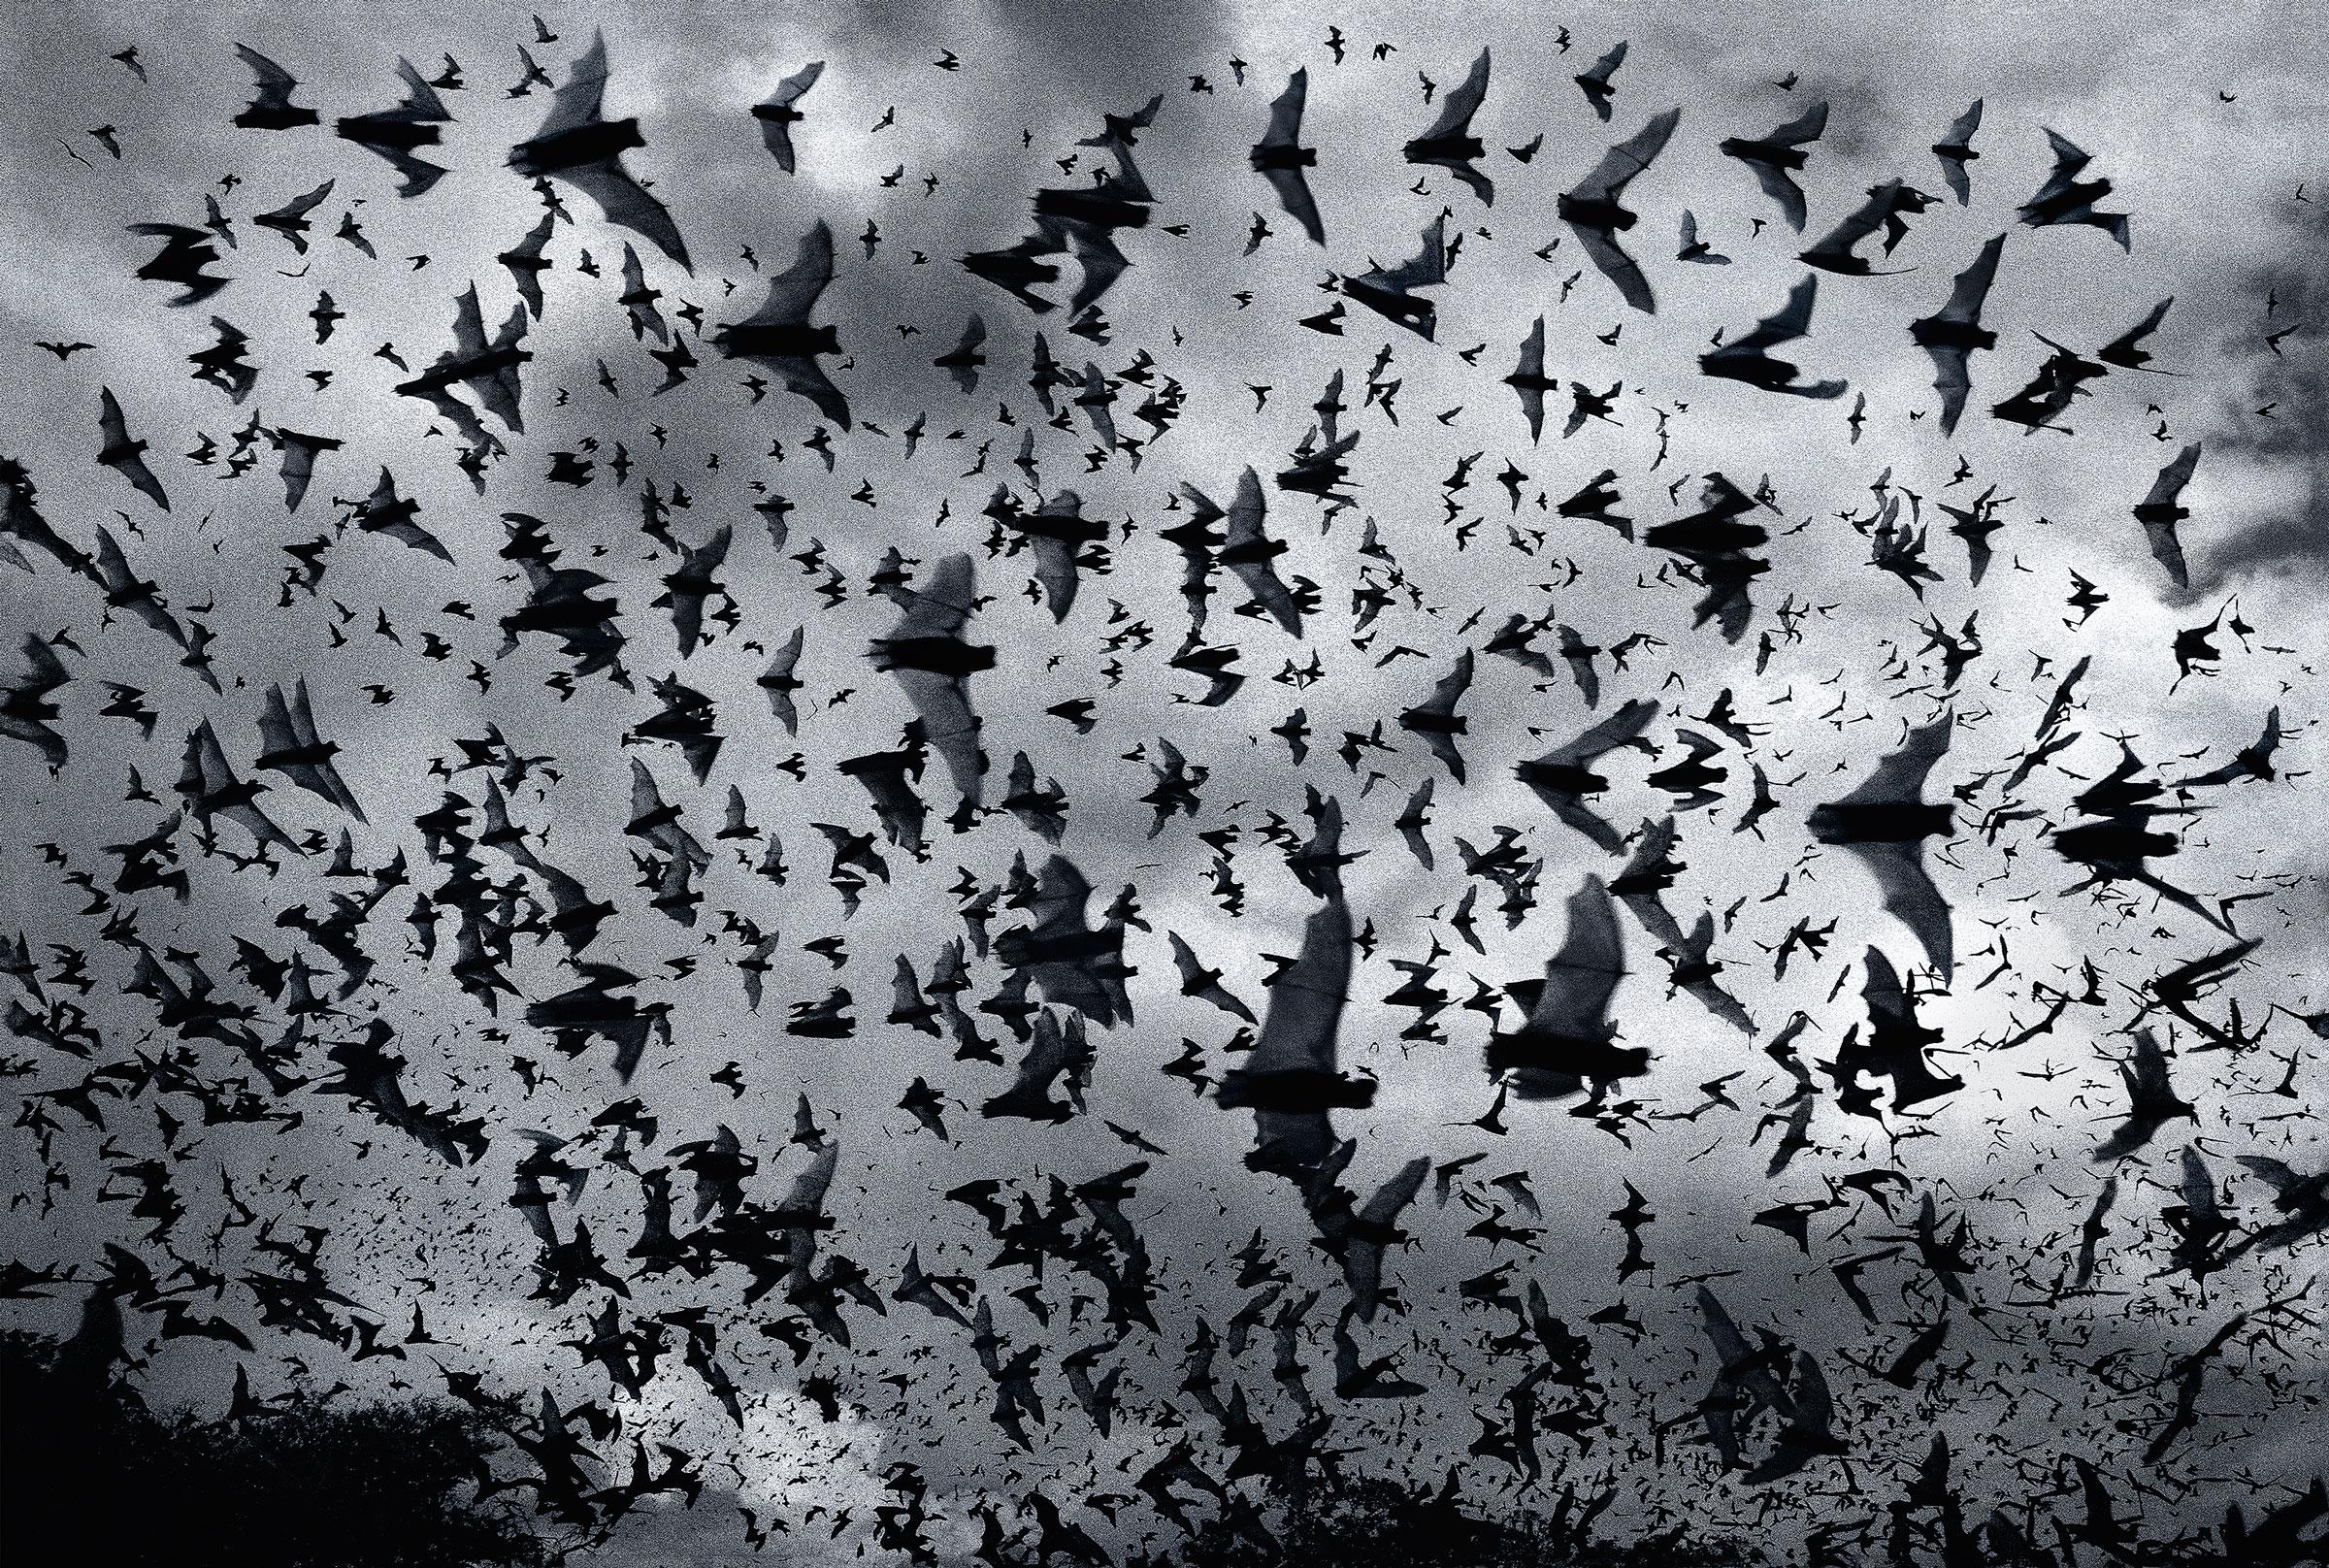 Bat Bomb - Zeitgenössische britische Kunst, Fotografie, Fledermaus, Tiere, Tim Flach